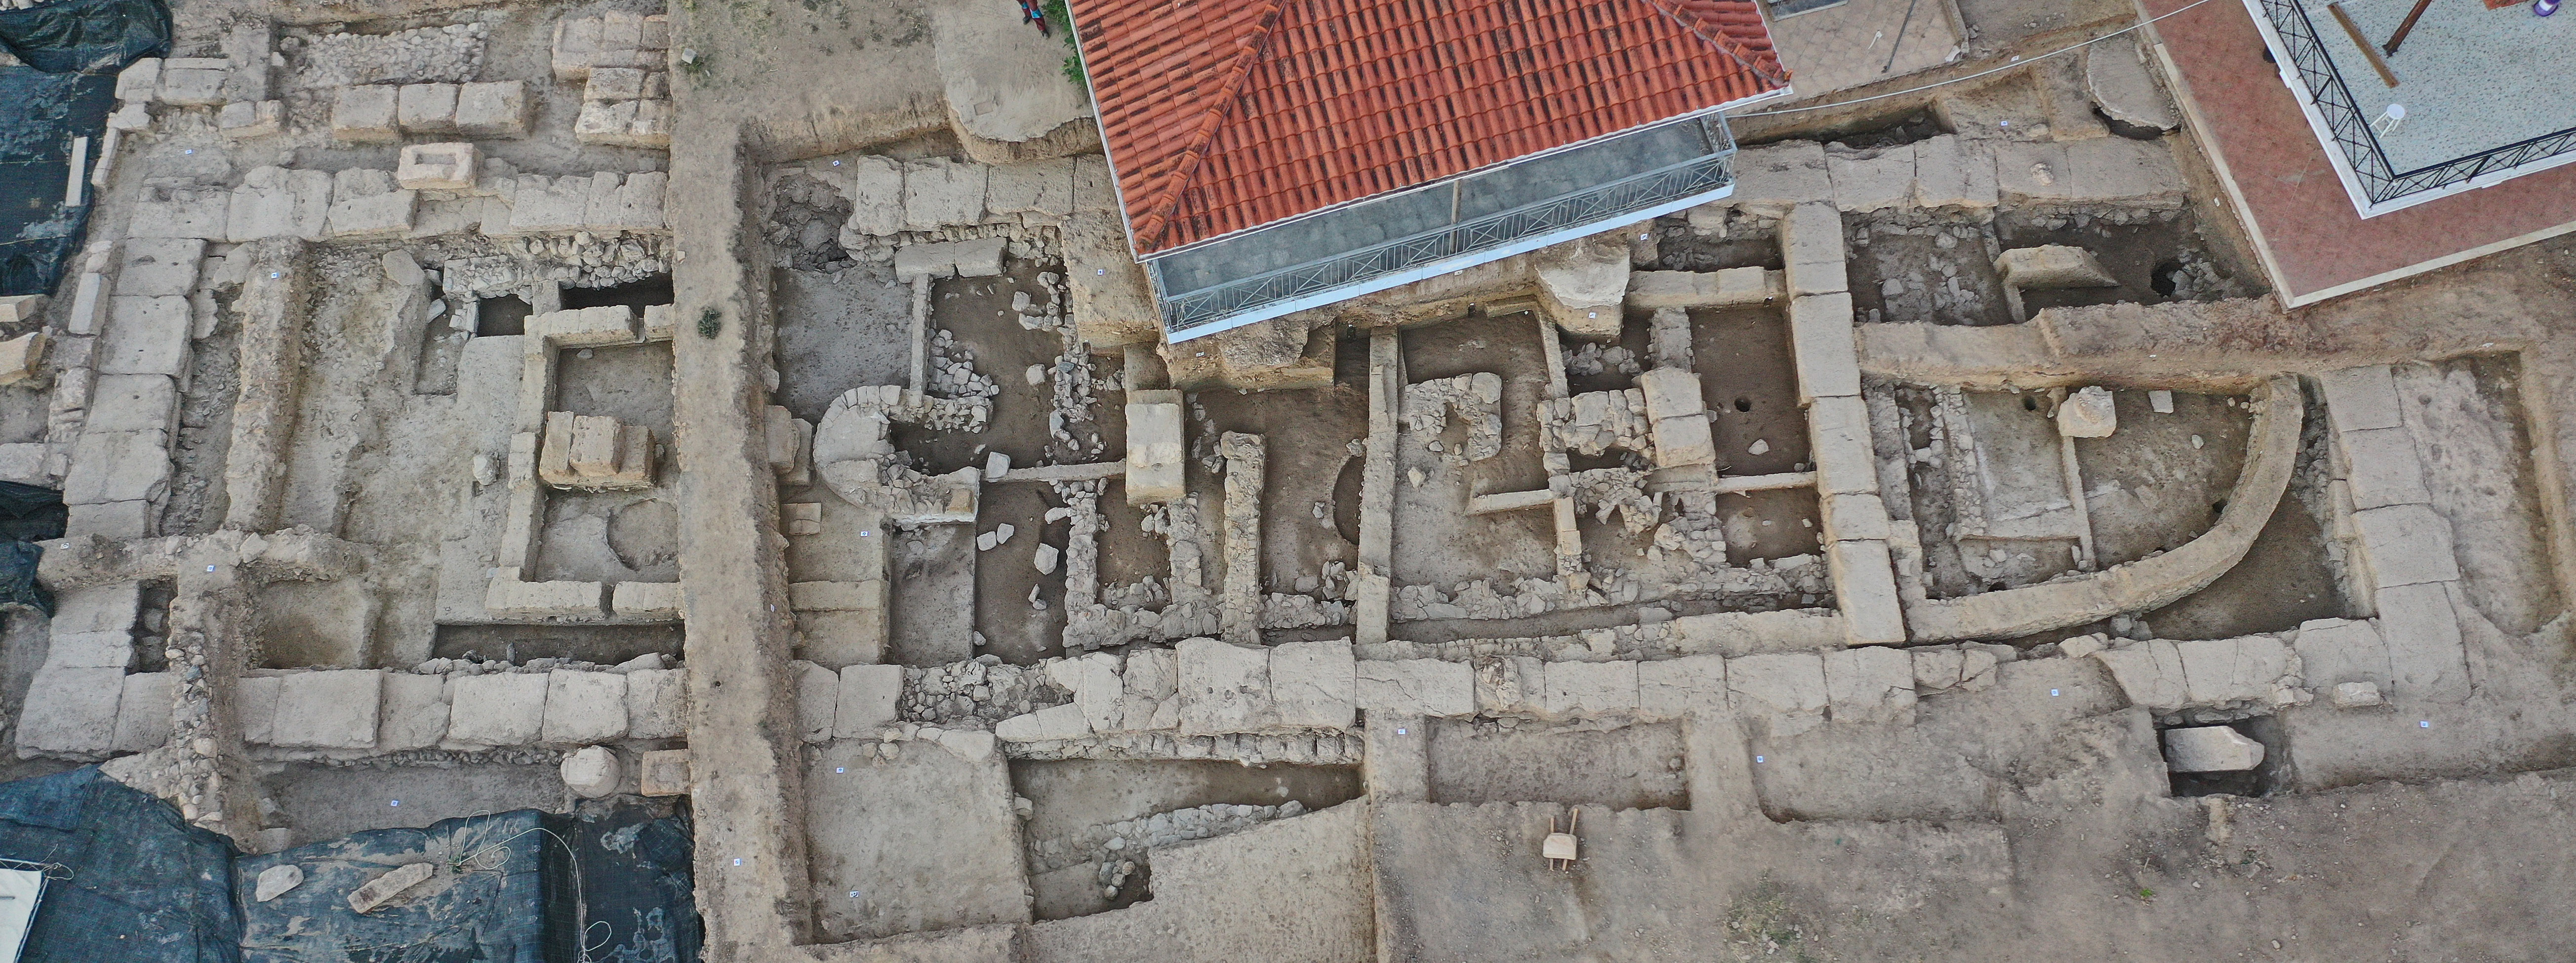 Εύβοια: Εκατόμπεδος ναός 2.600 ετών αποκαλύφθηκε στην ανασκαφή του ιερού της Αρτέμιδος-1